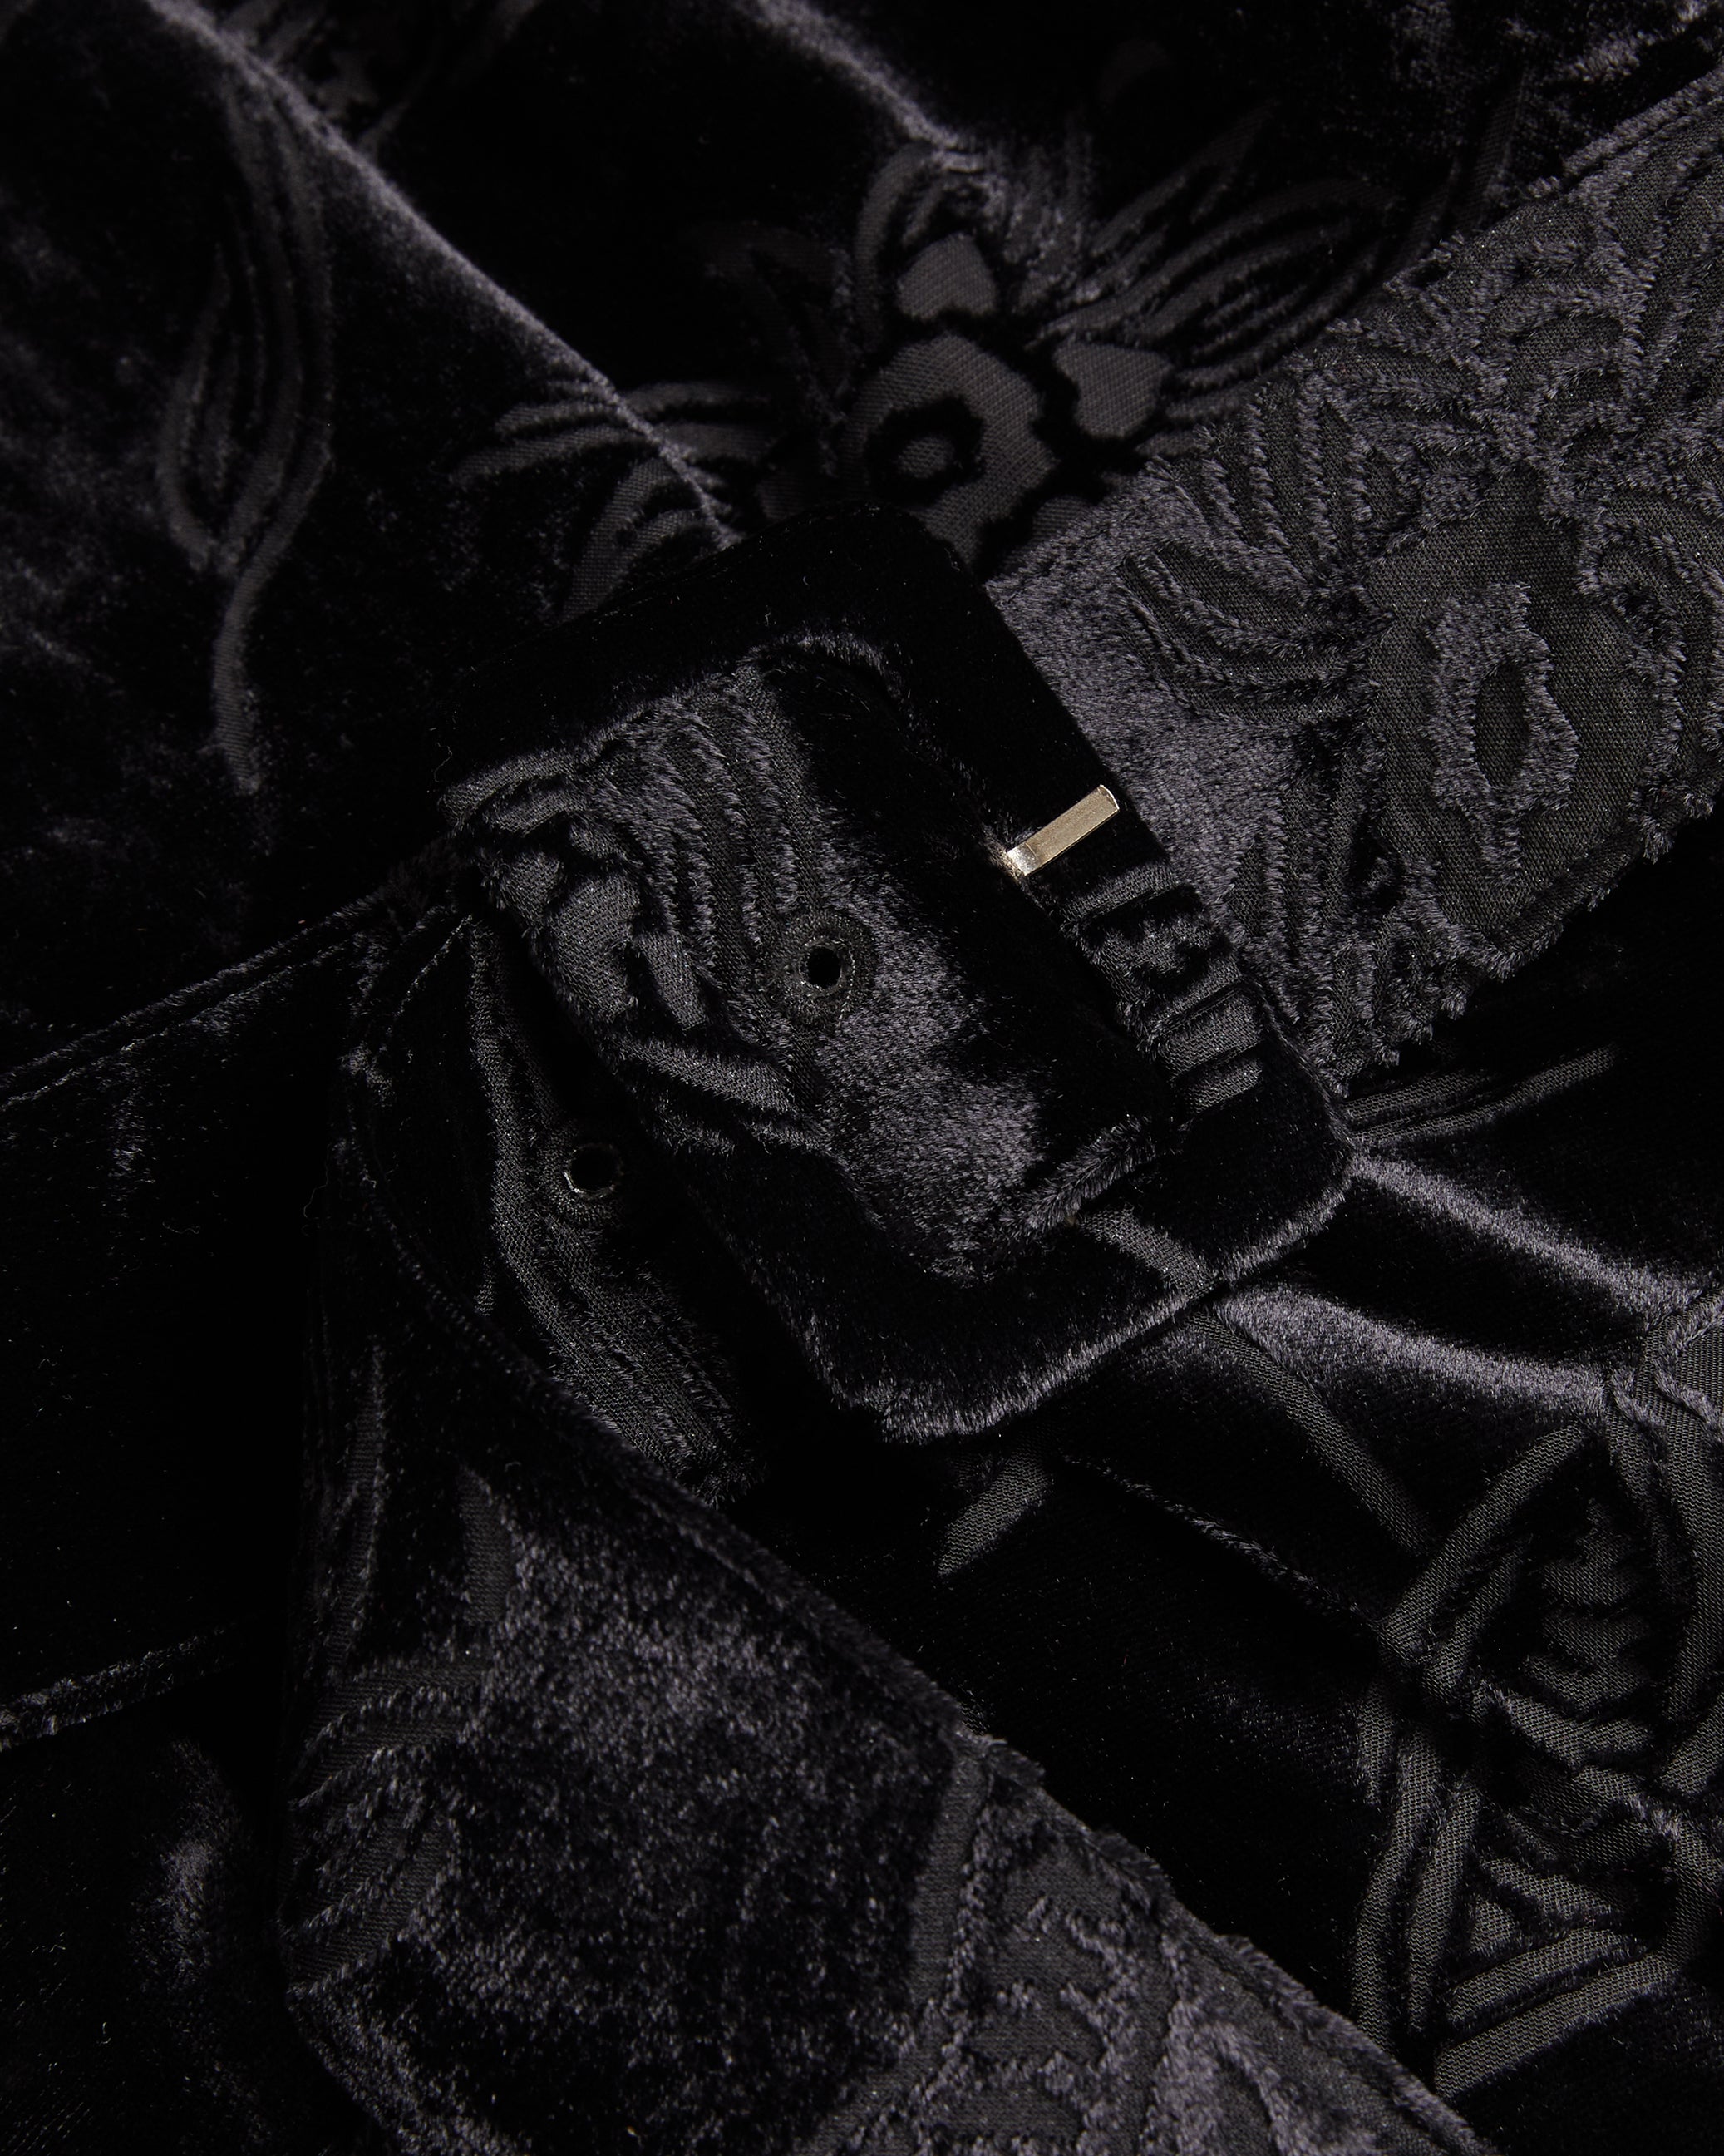 Black Velvet Fabric, Black And Gold Velvet